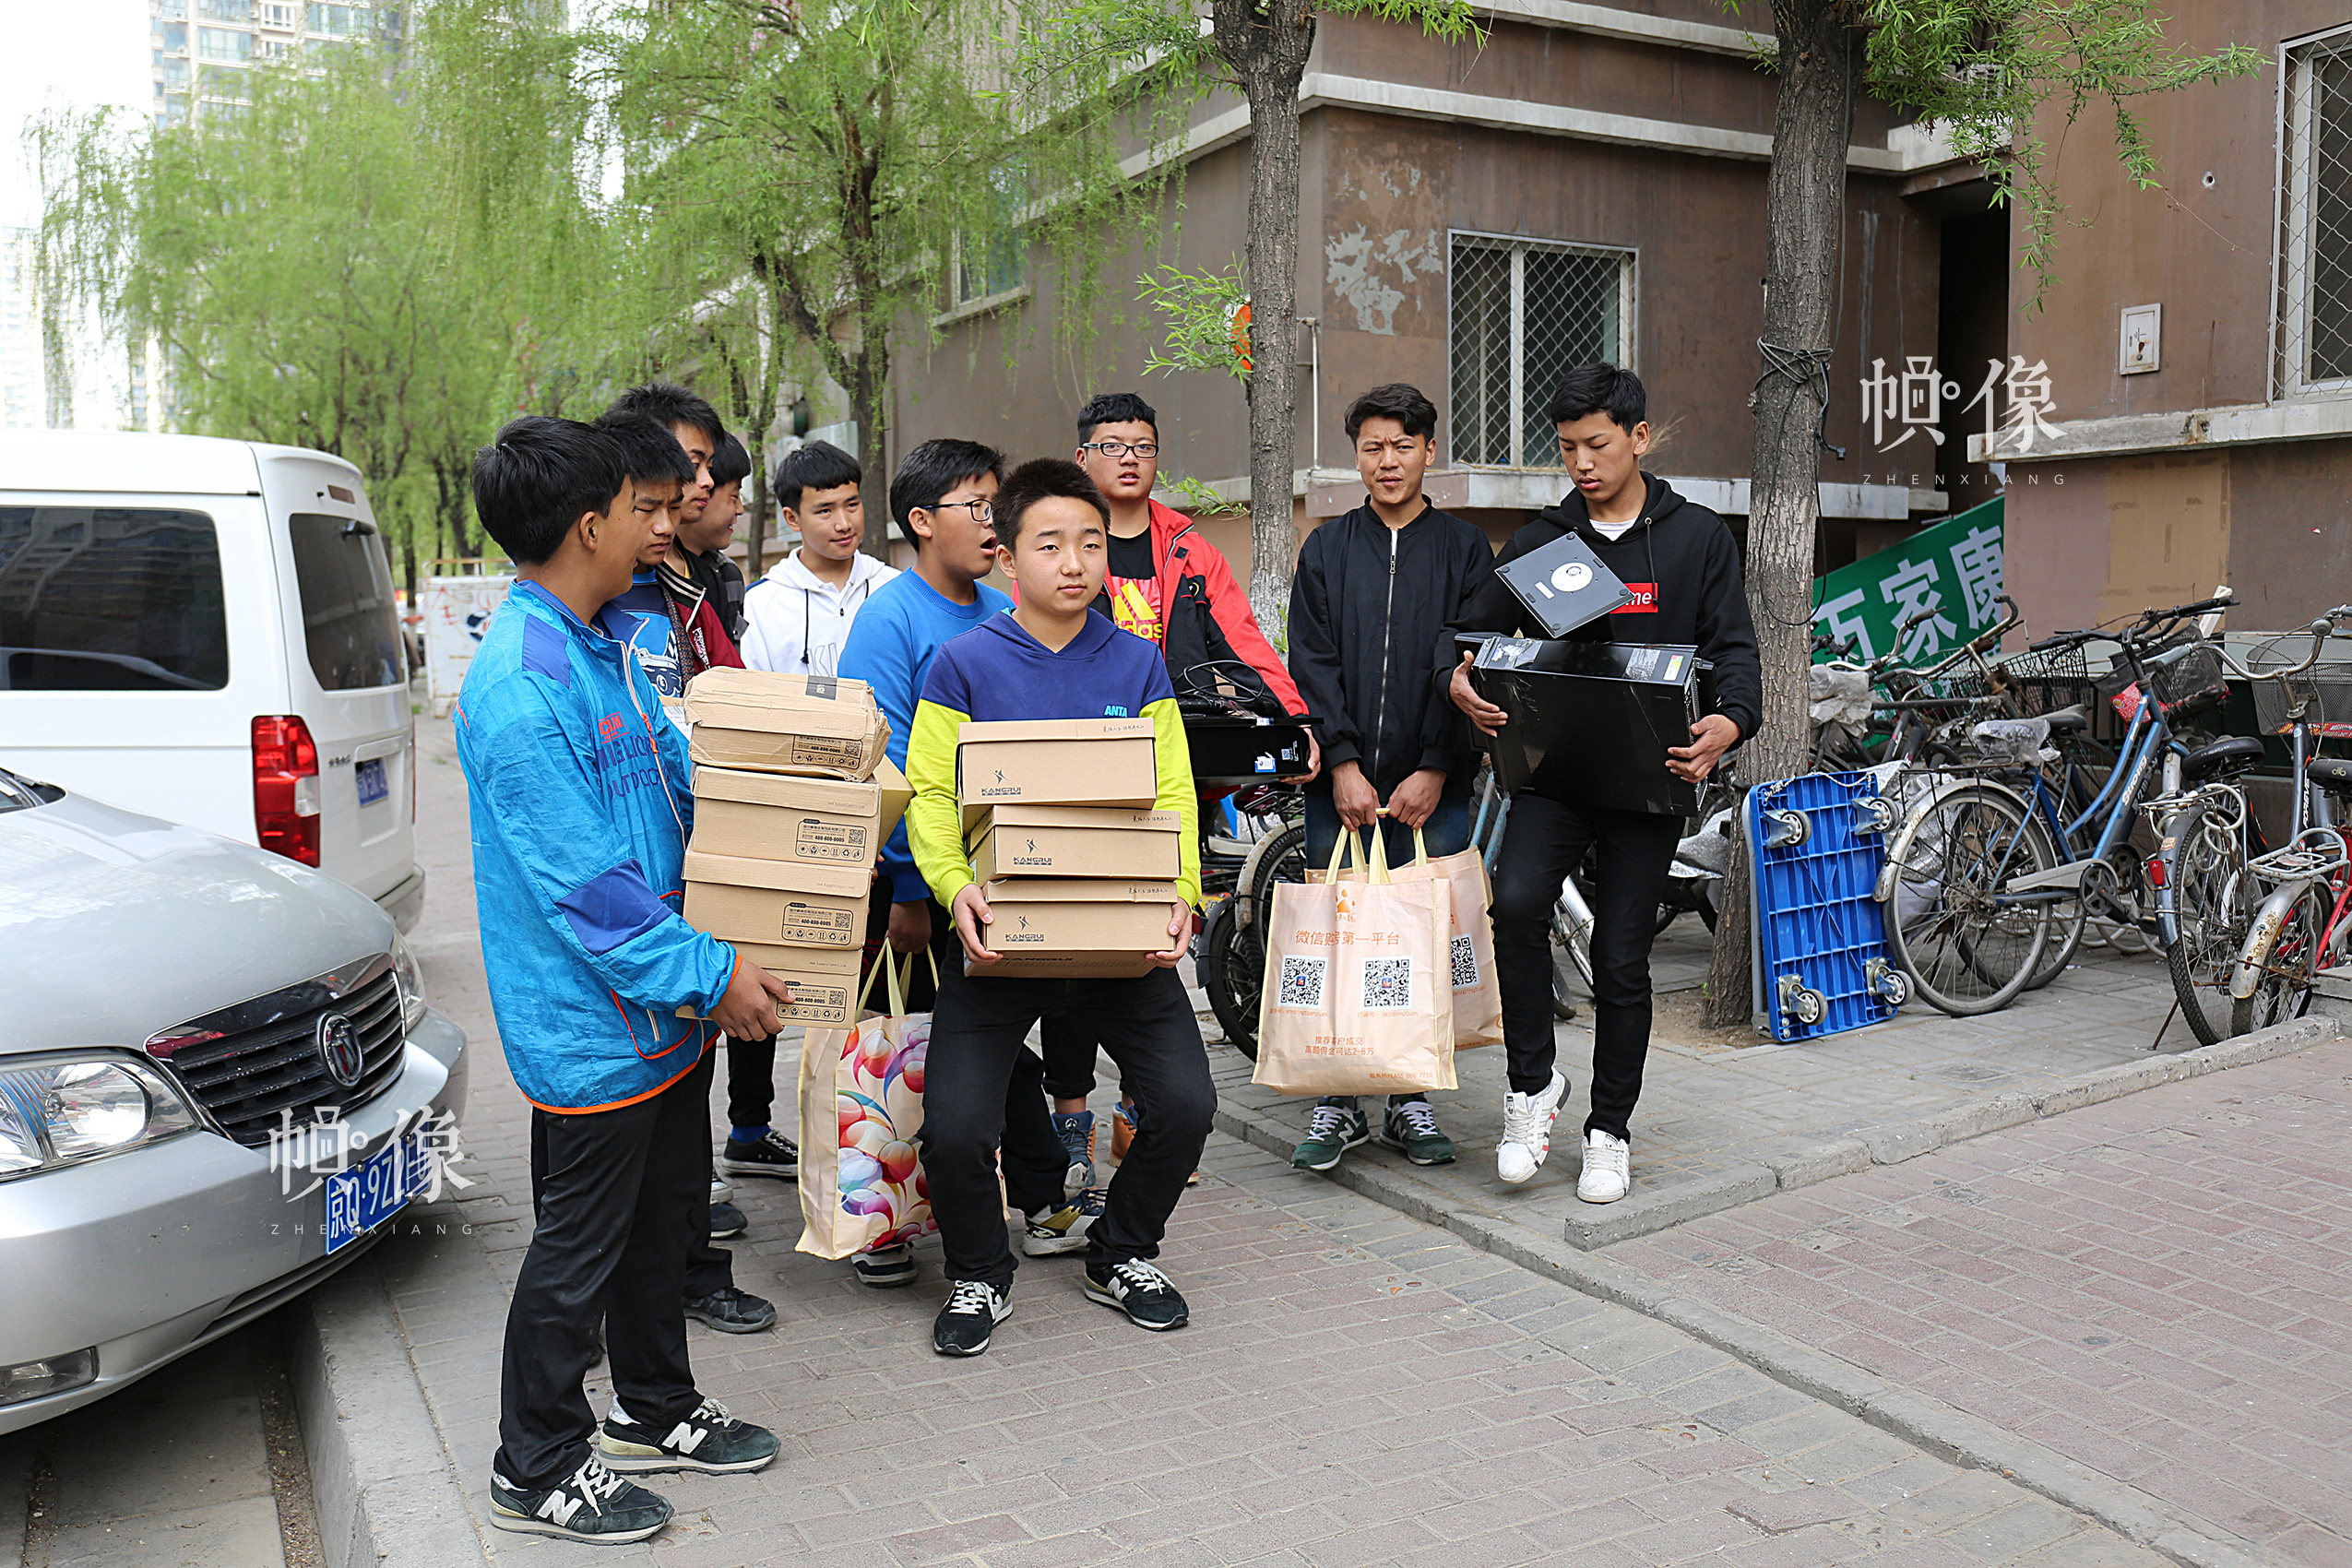 2017年4月9日，公益机构“民兵团”为北京益童成长中心的玉树儿童带来了一万多元的捐赠物品，其中包括电脑，打印机等，这个机构已经连续捐助八个月，其负责人表示，未来还会一直捐赠。中国网记者 黄富友 摄  